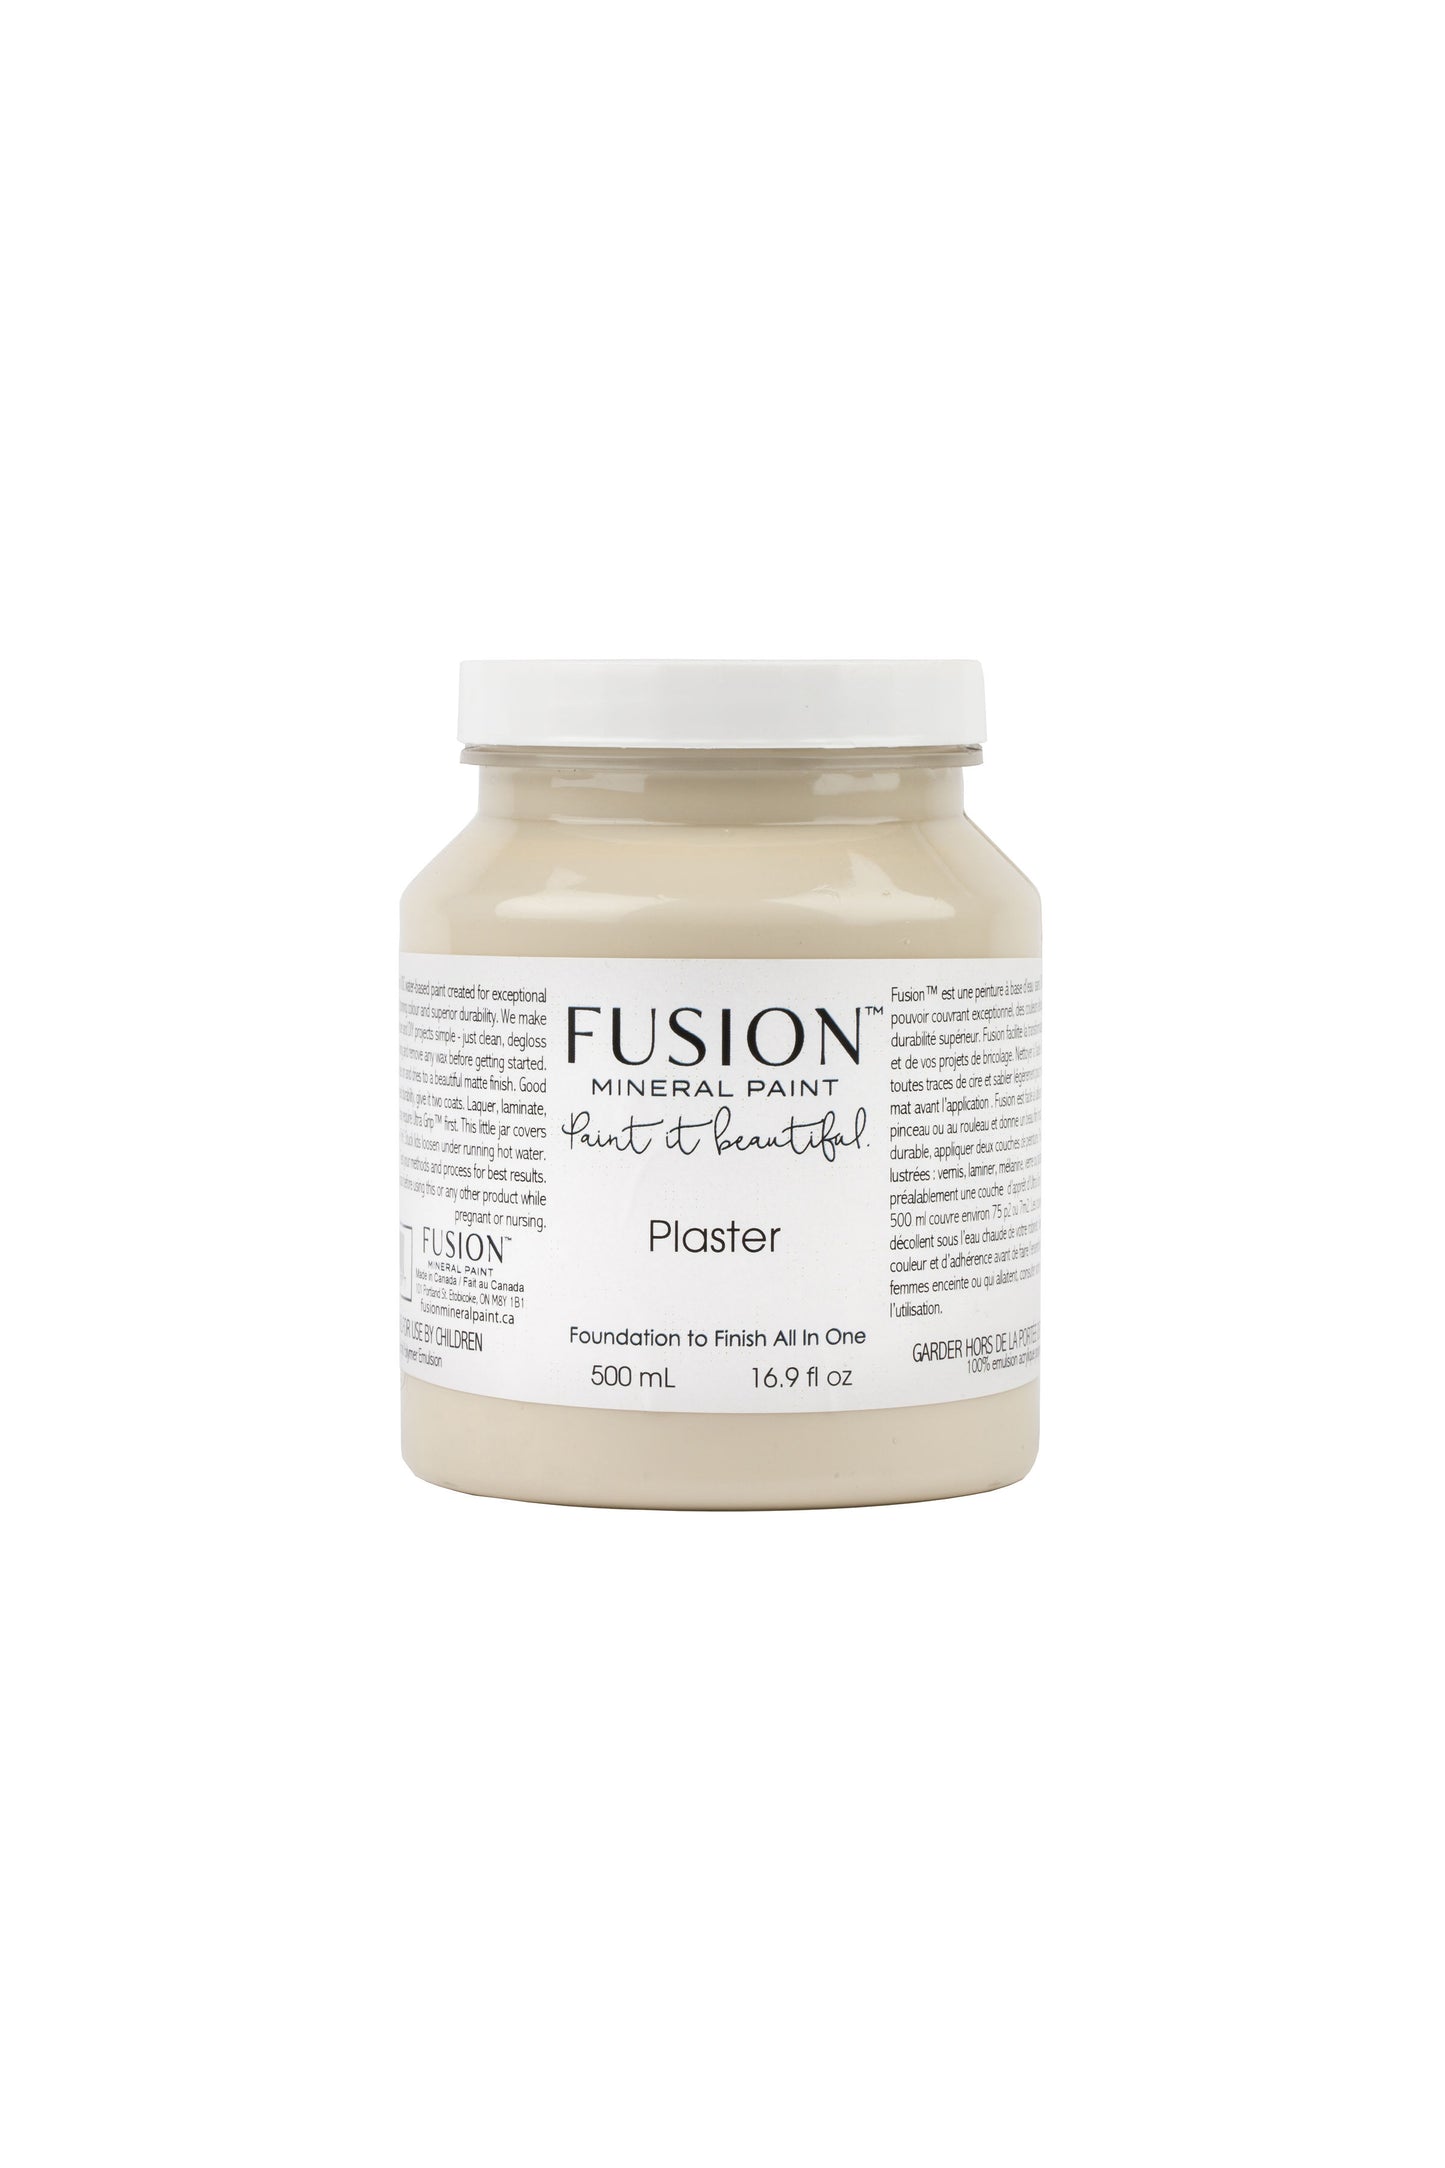 Plaster Fusion Mineral Paint,  Beige Paint Color| 500ml Pint Size